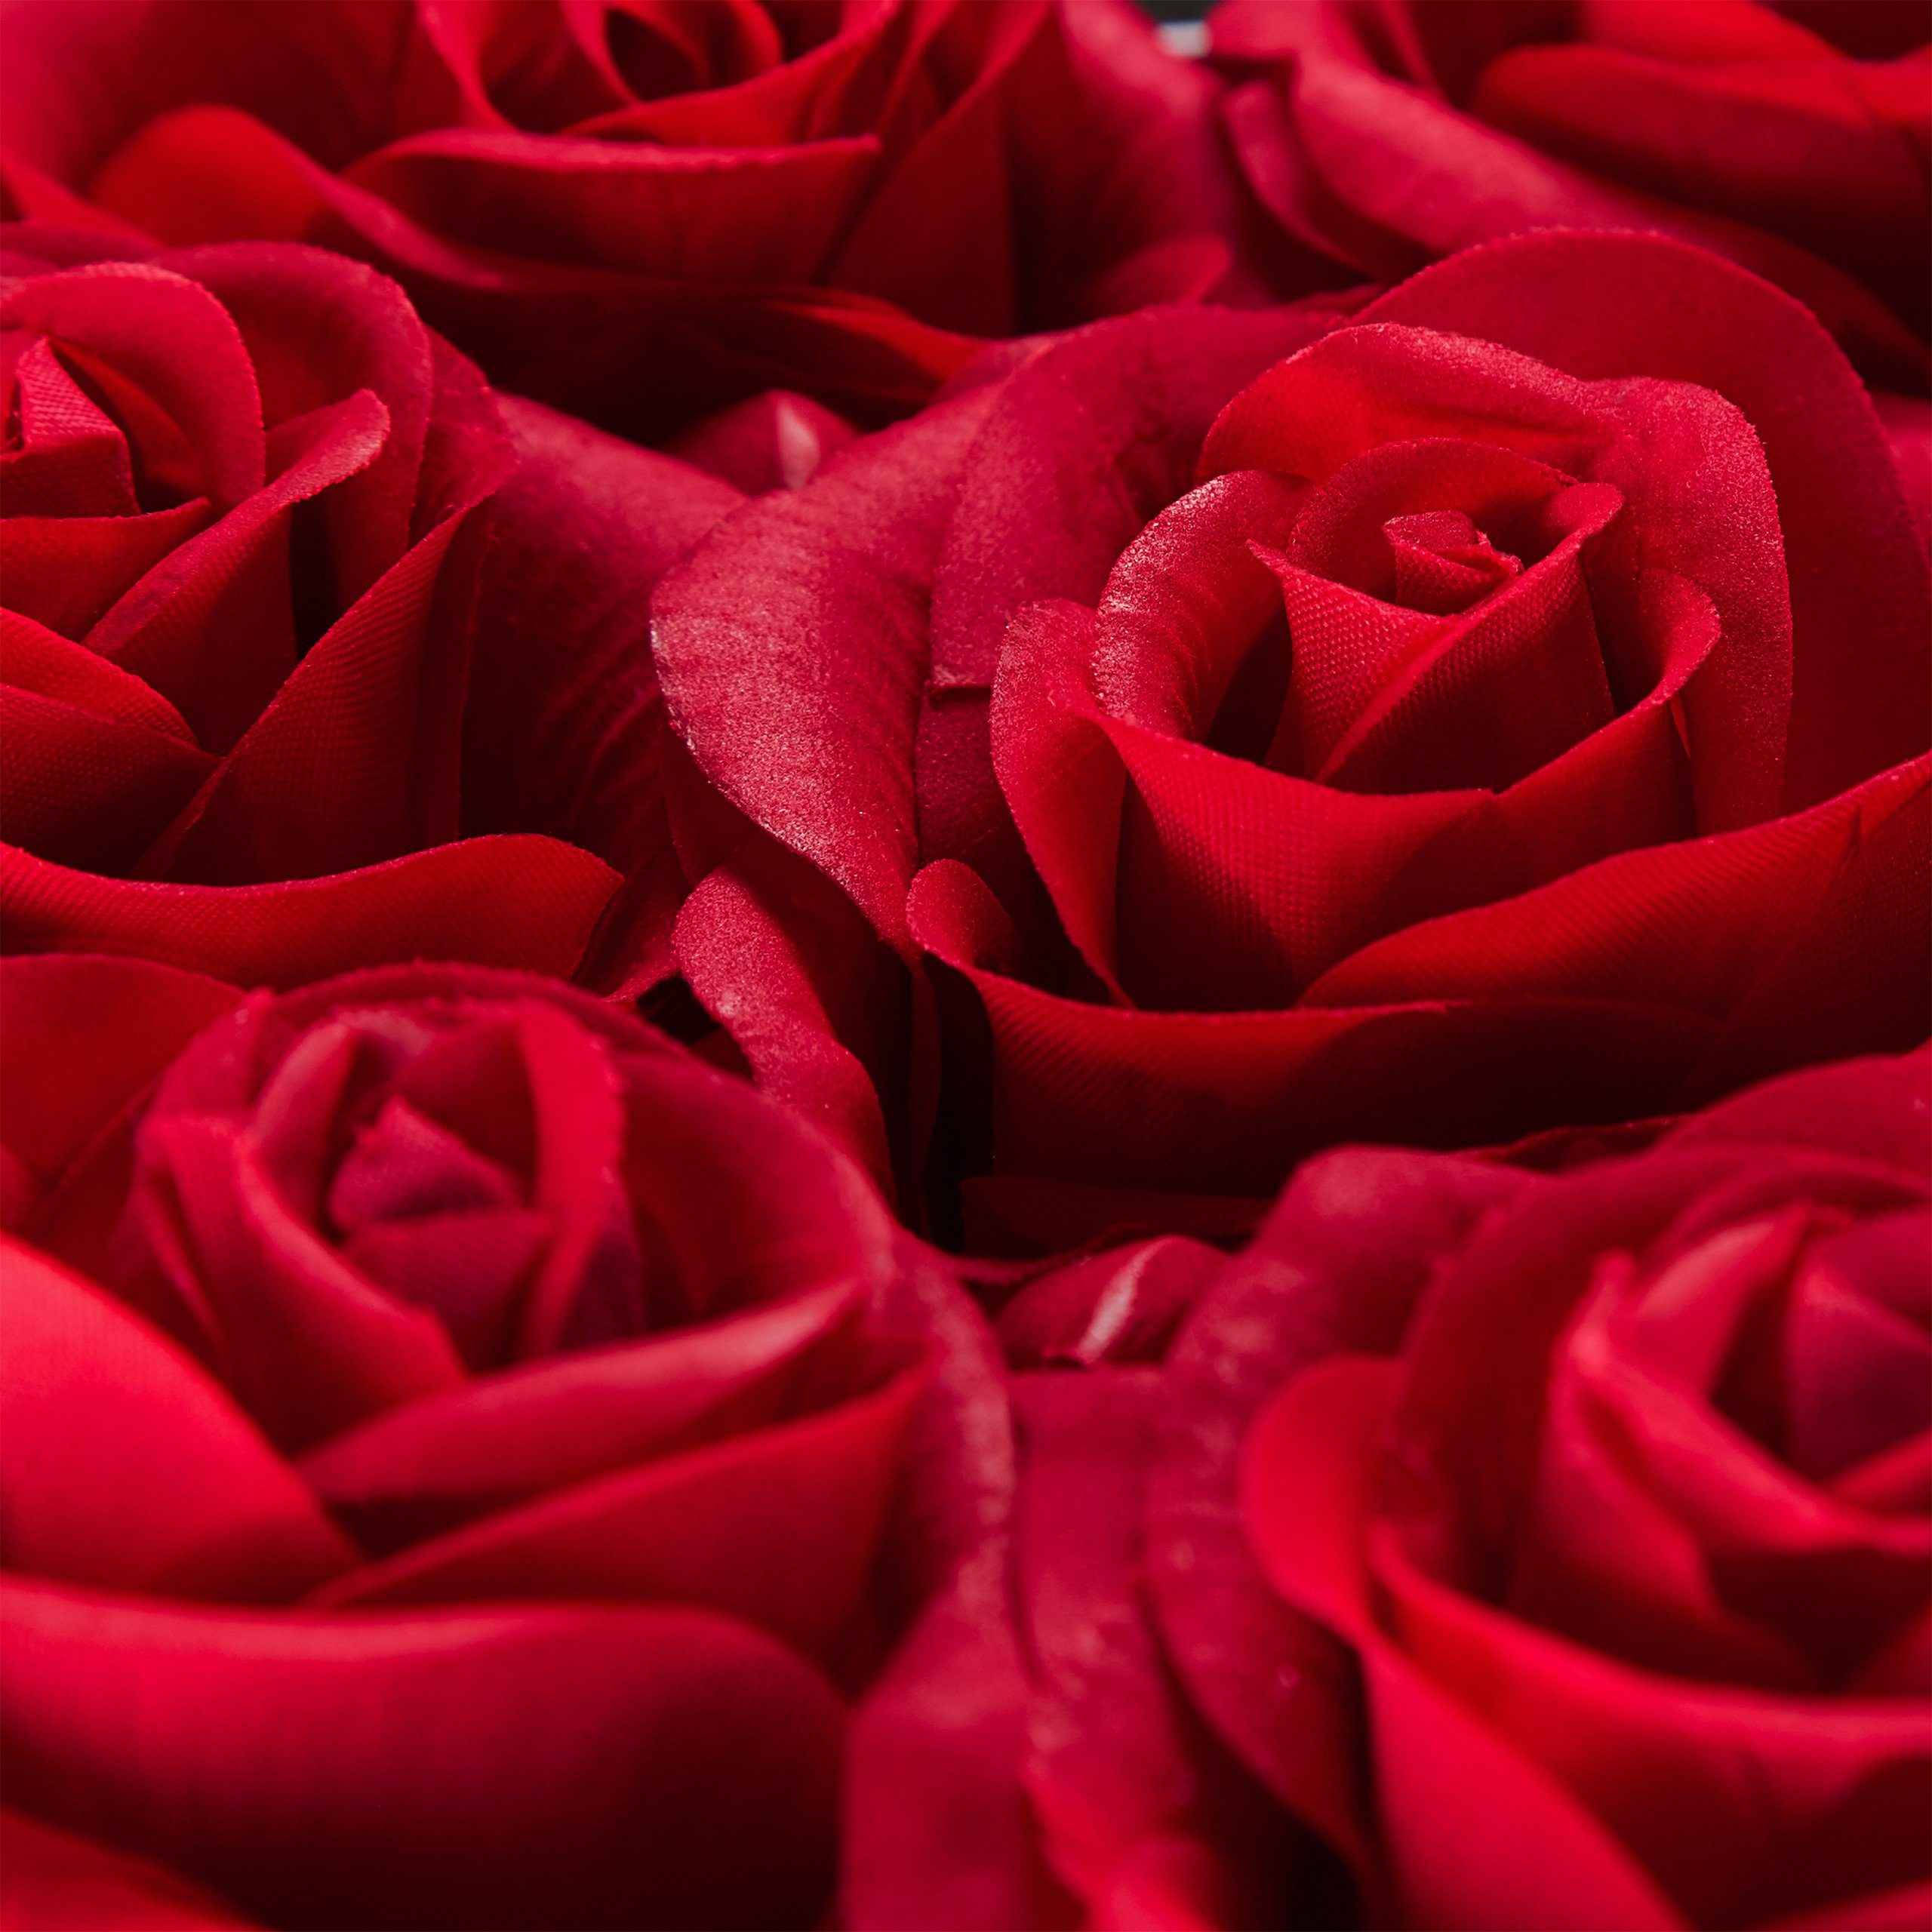 Gestecke Schwarze Rosenbox Herz Schwarz relaxdays, 13 Rosen, Rot 18 cm, Höhe Rot